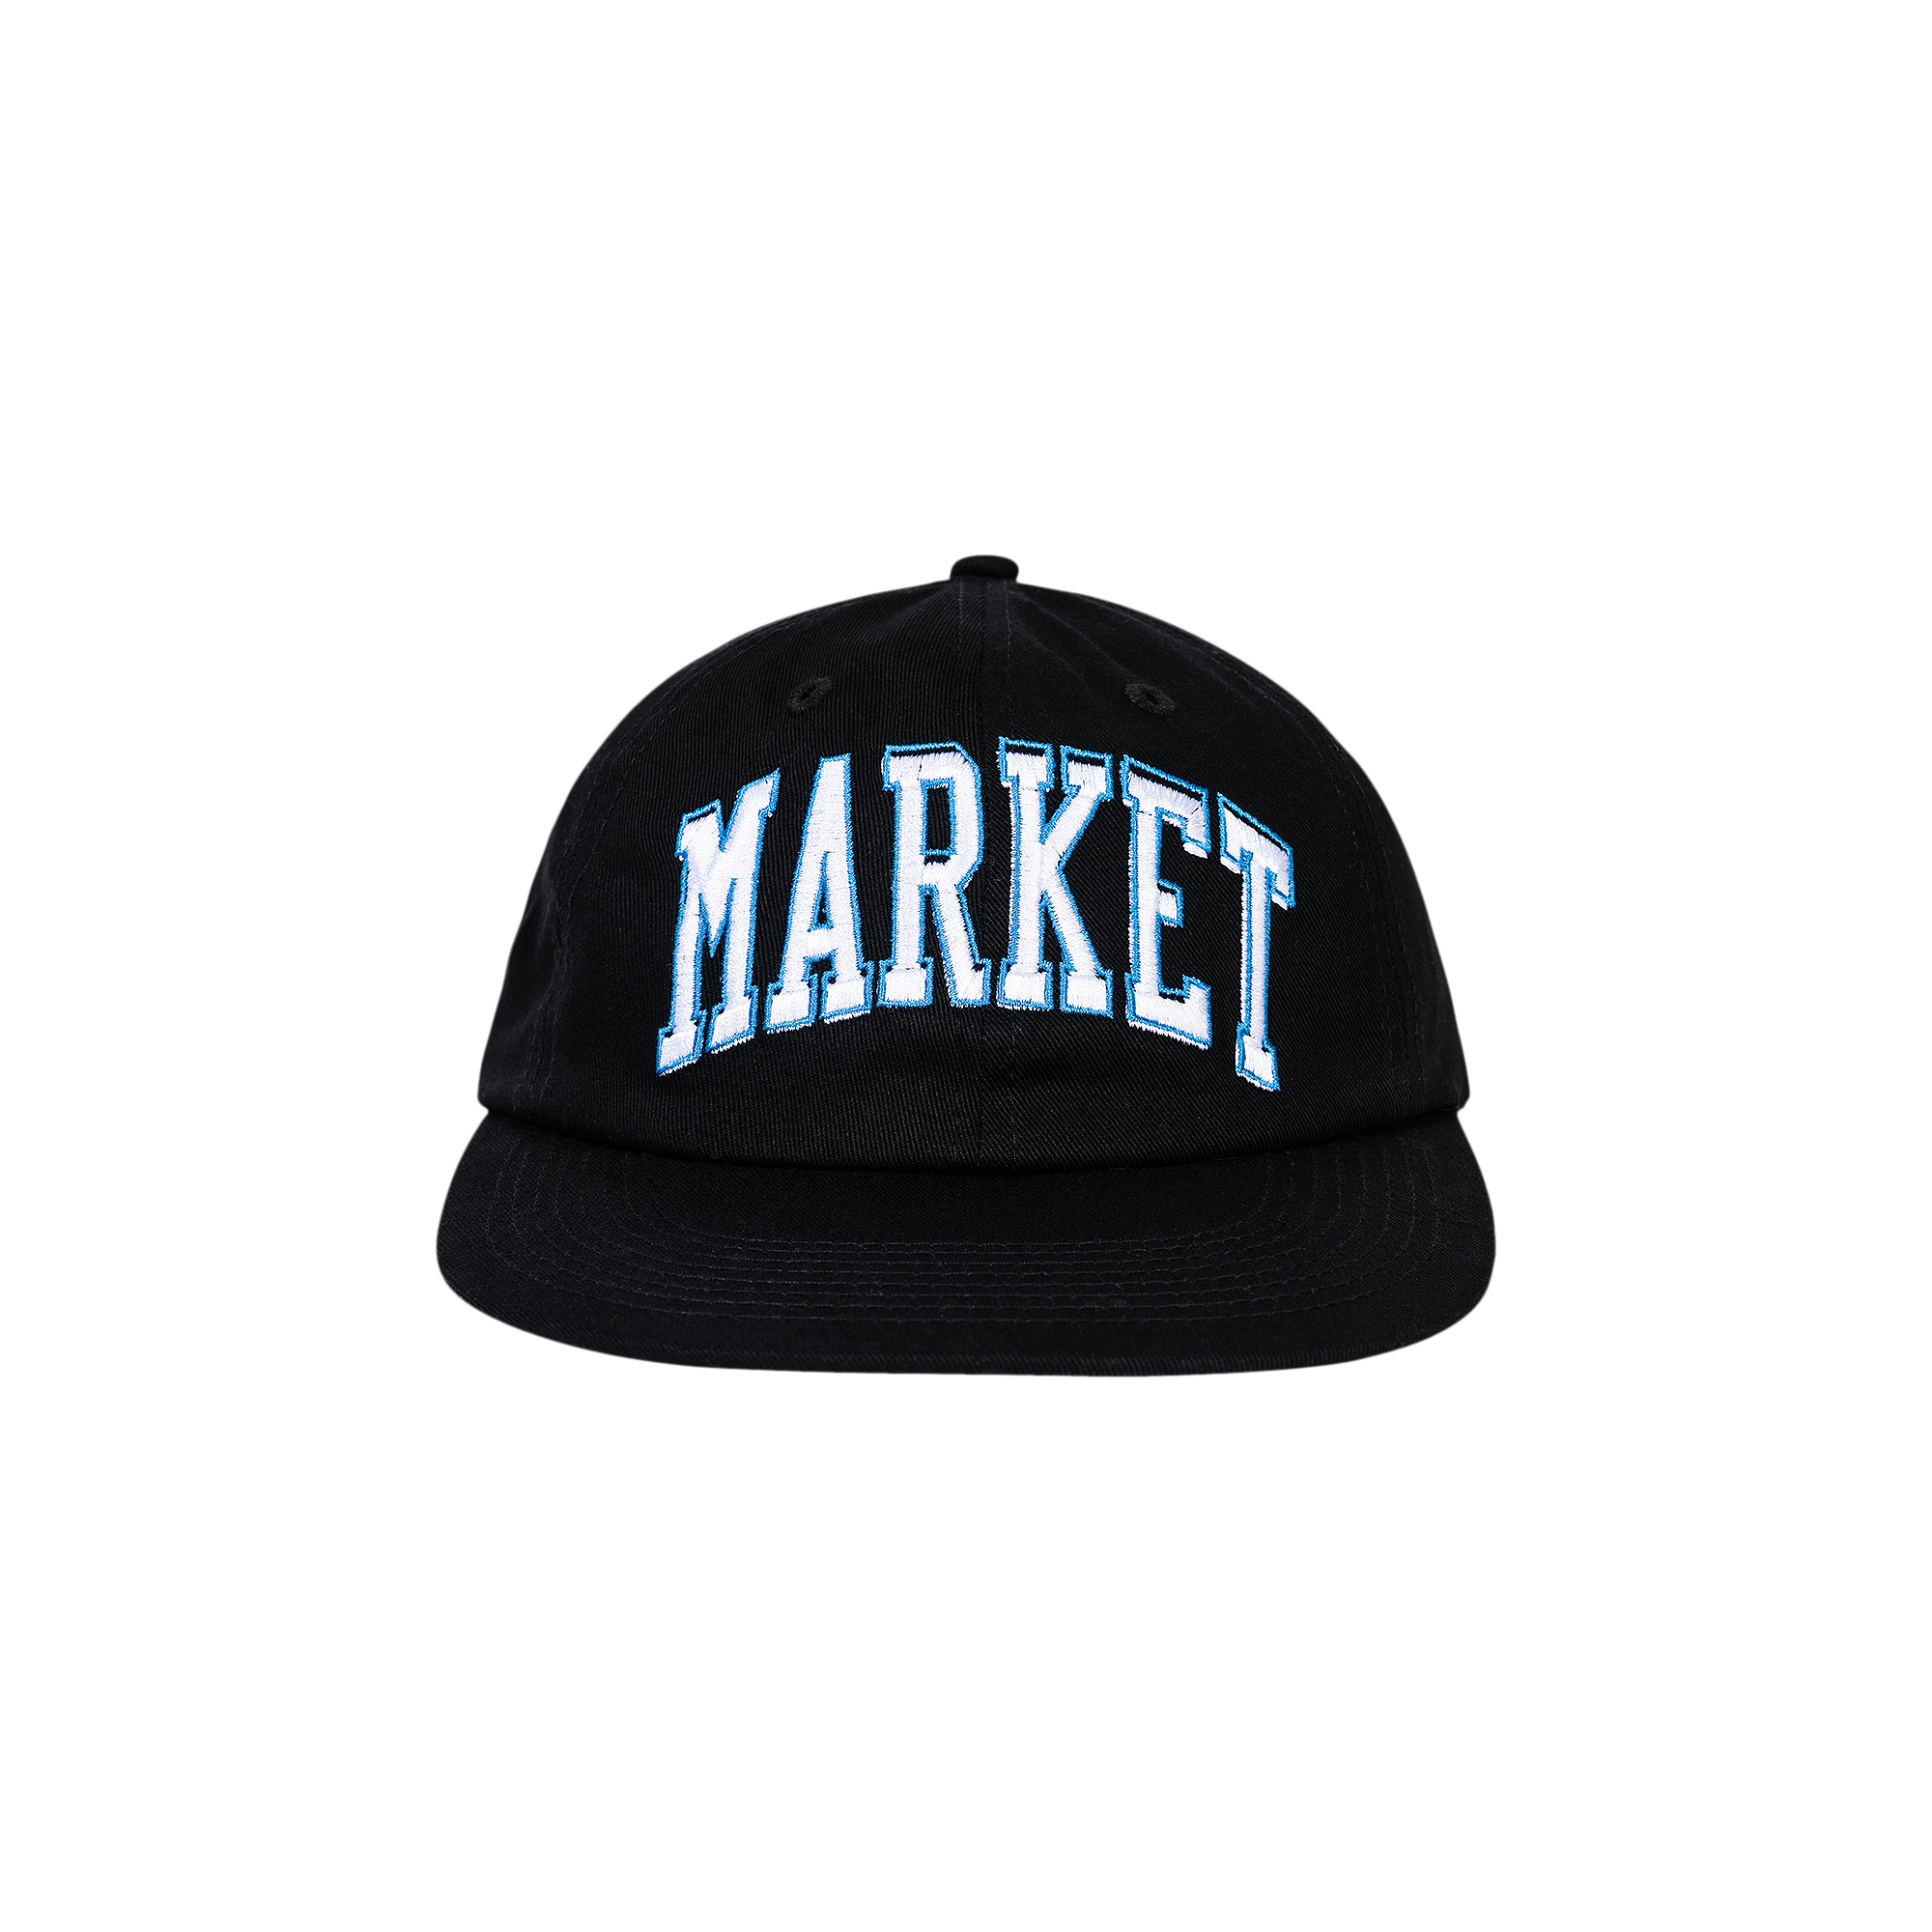 Pre-owned Market Offset Arc 6 Panel Hat 'black'